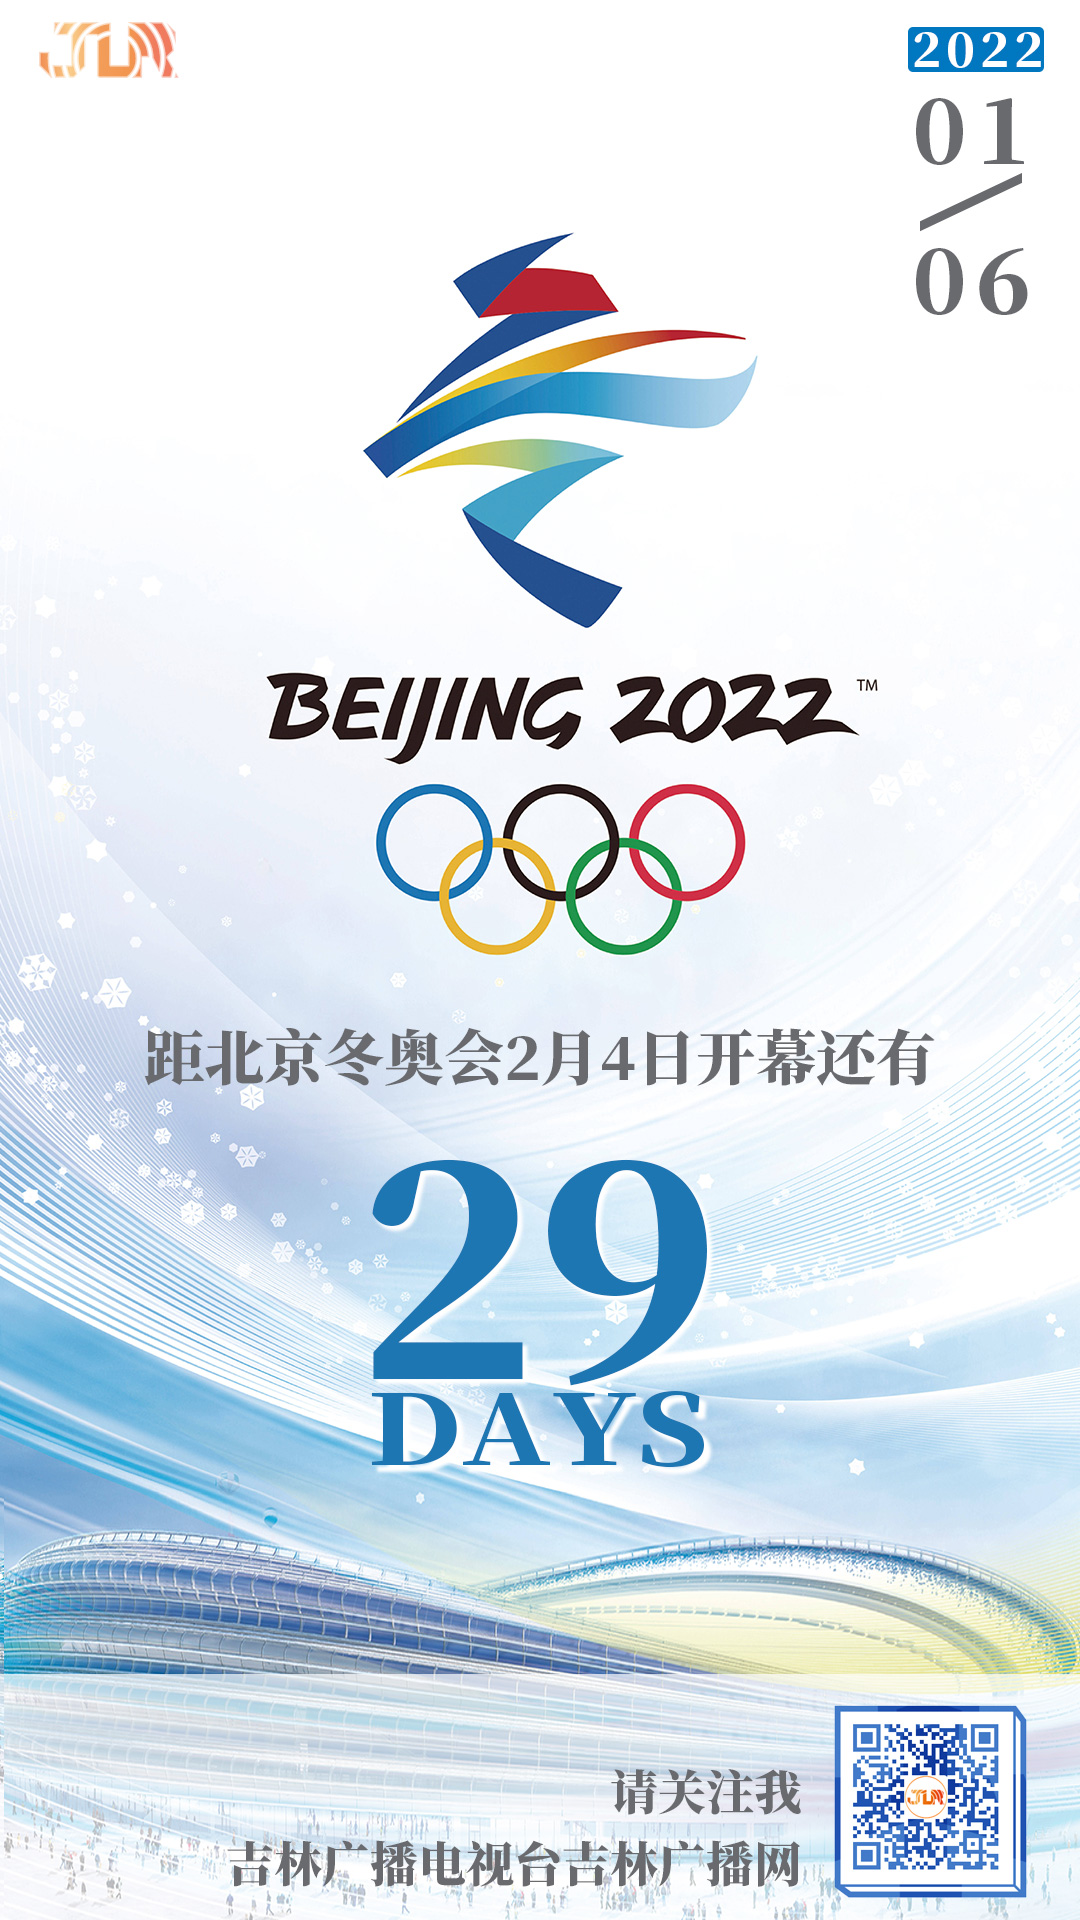 距北京冬奥会2月4日开幕还有29天